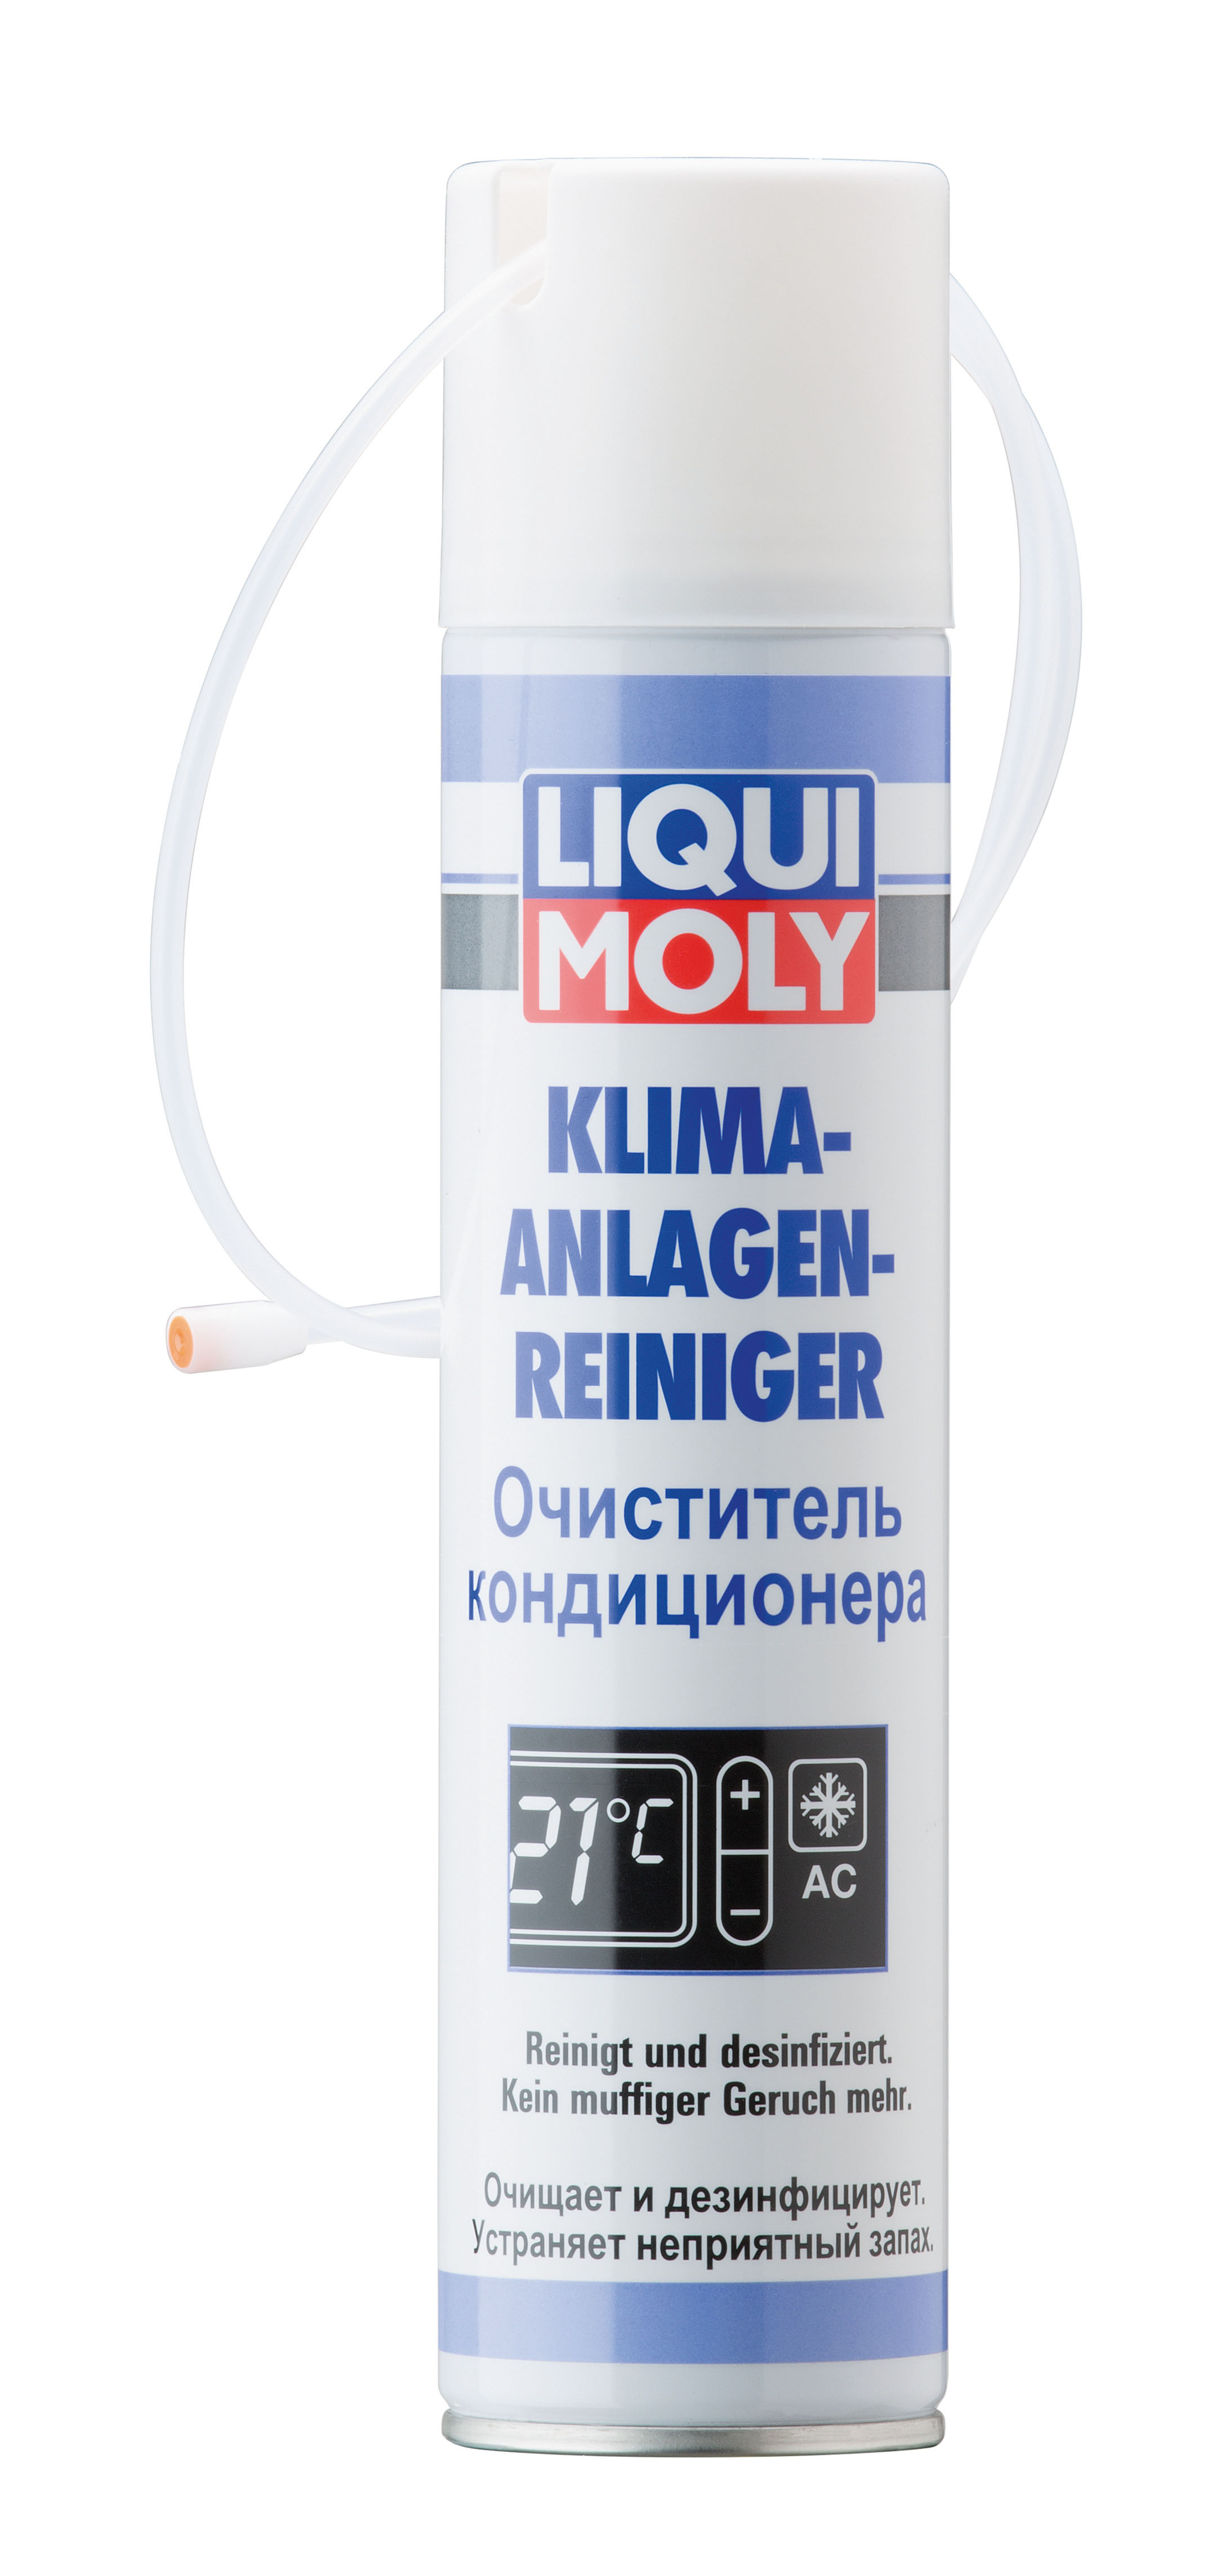 Очиститель кондиционера Klima-Anlagen-Reiniger, 250мл - Liqui Moly 7577